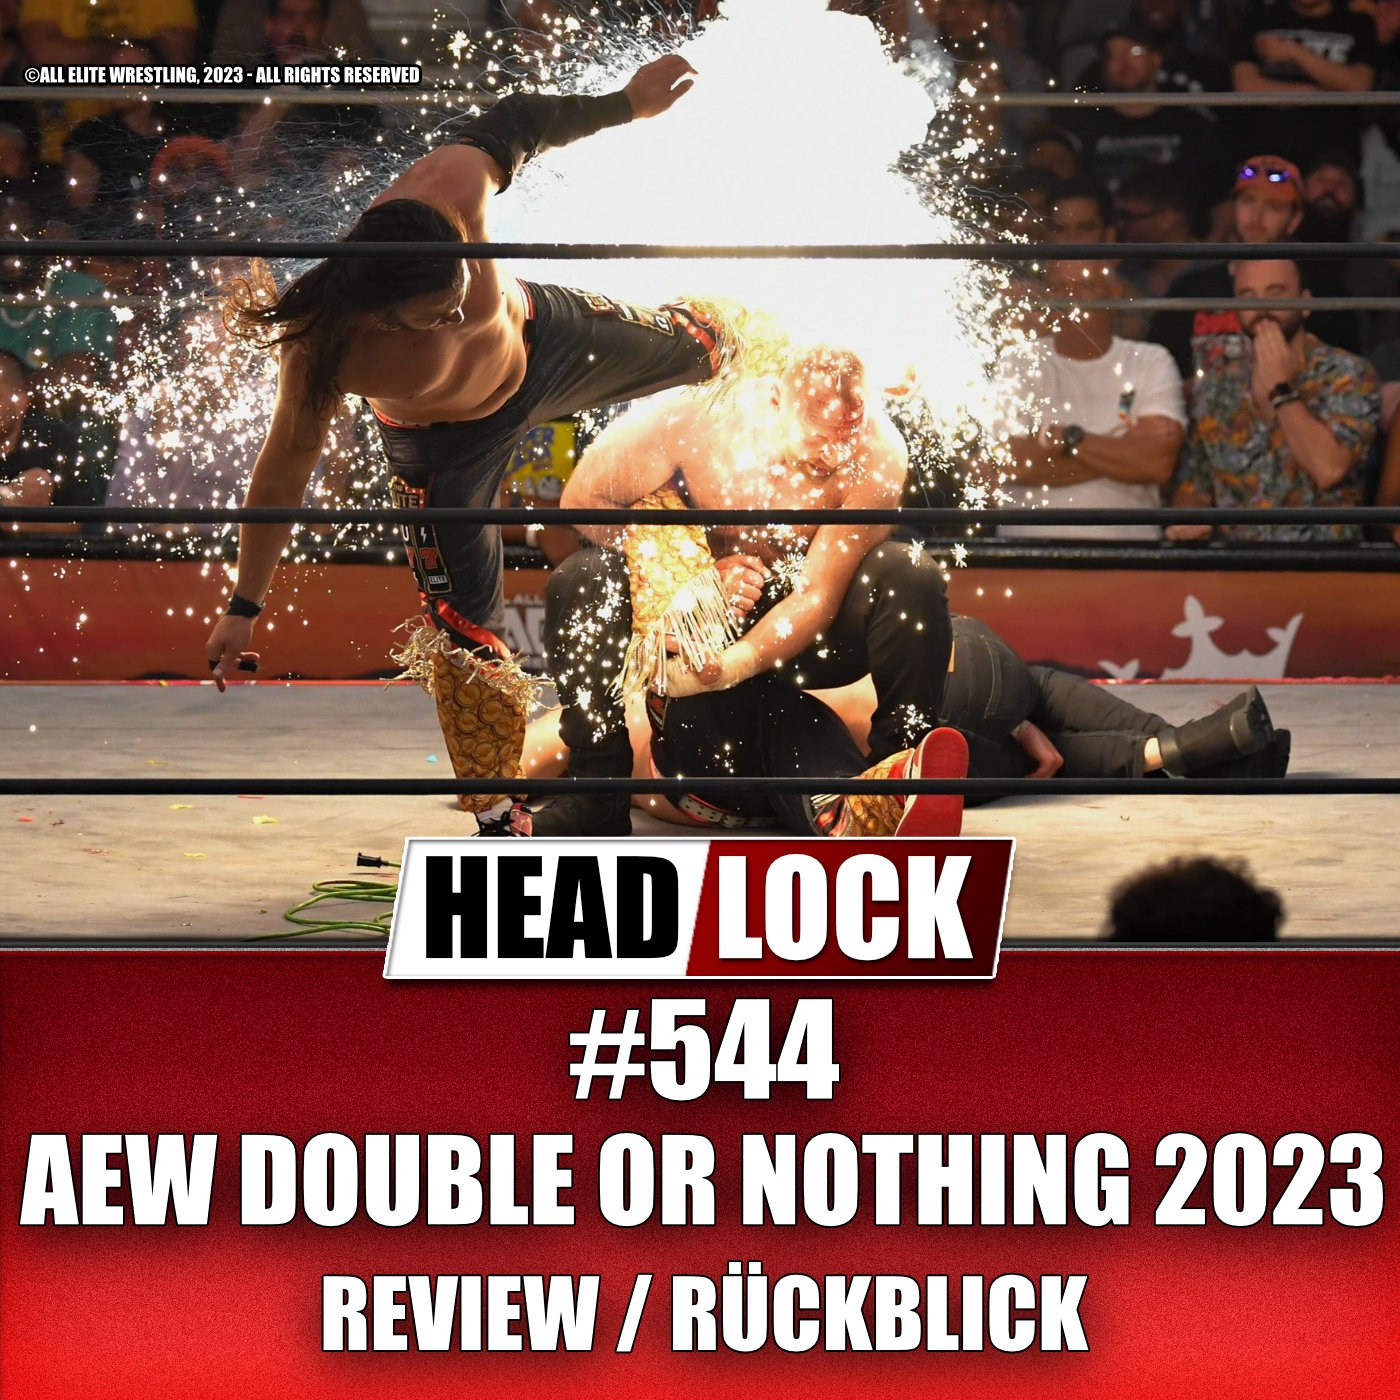 #544: AEW Double Or Nothing 2023 (Review / Rückblick) - KONTROVERSE SHOW - TROTZ KNALLEFFEKT!